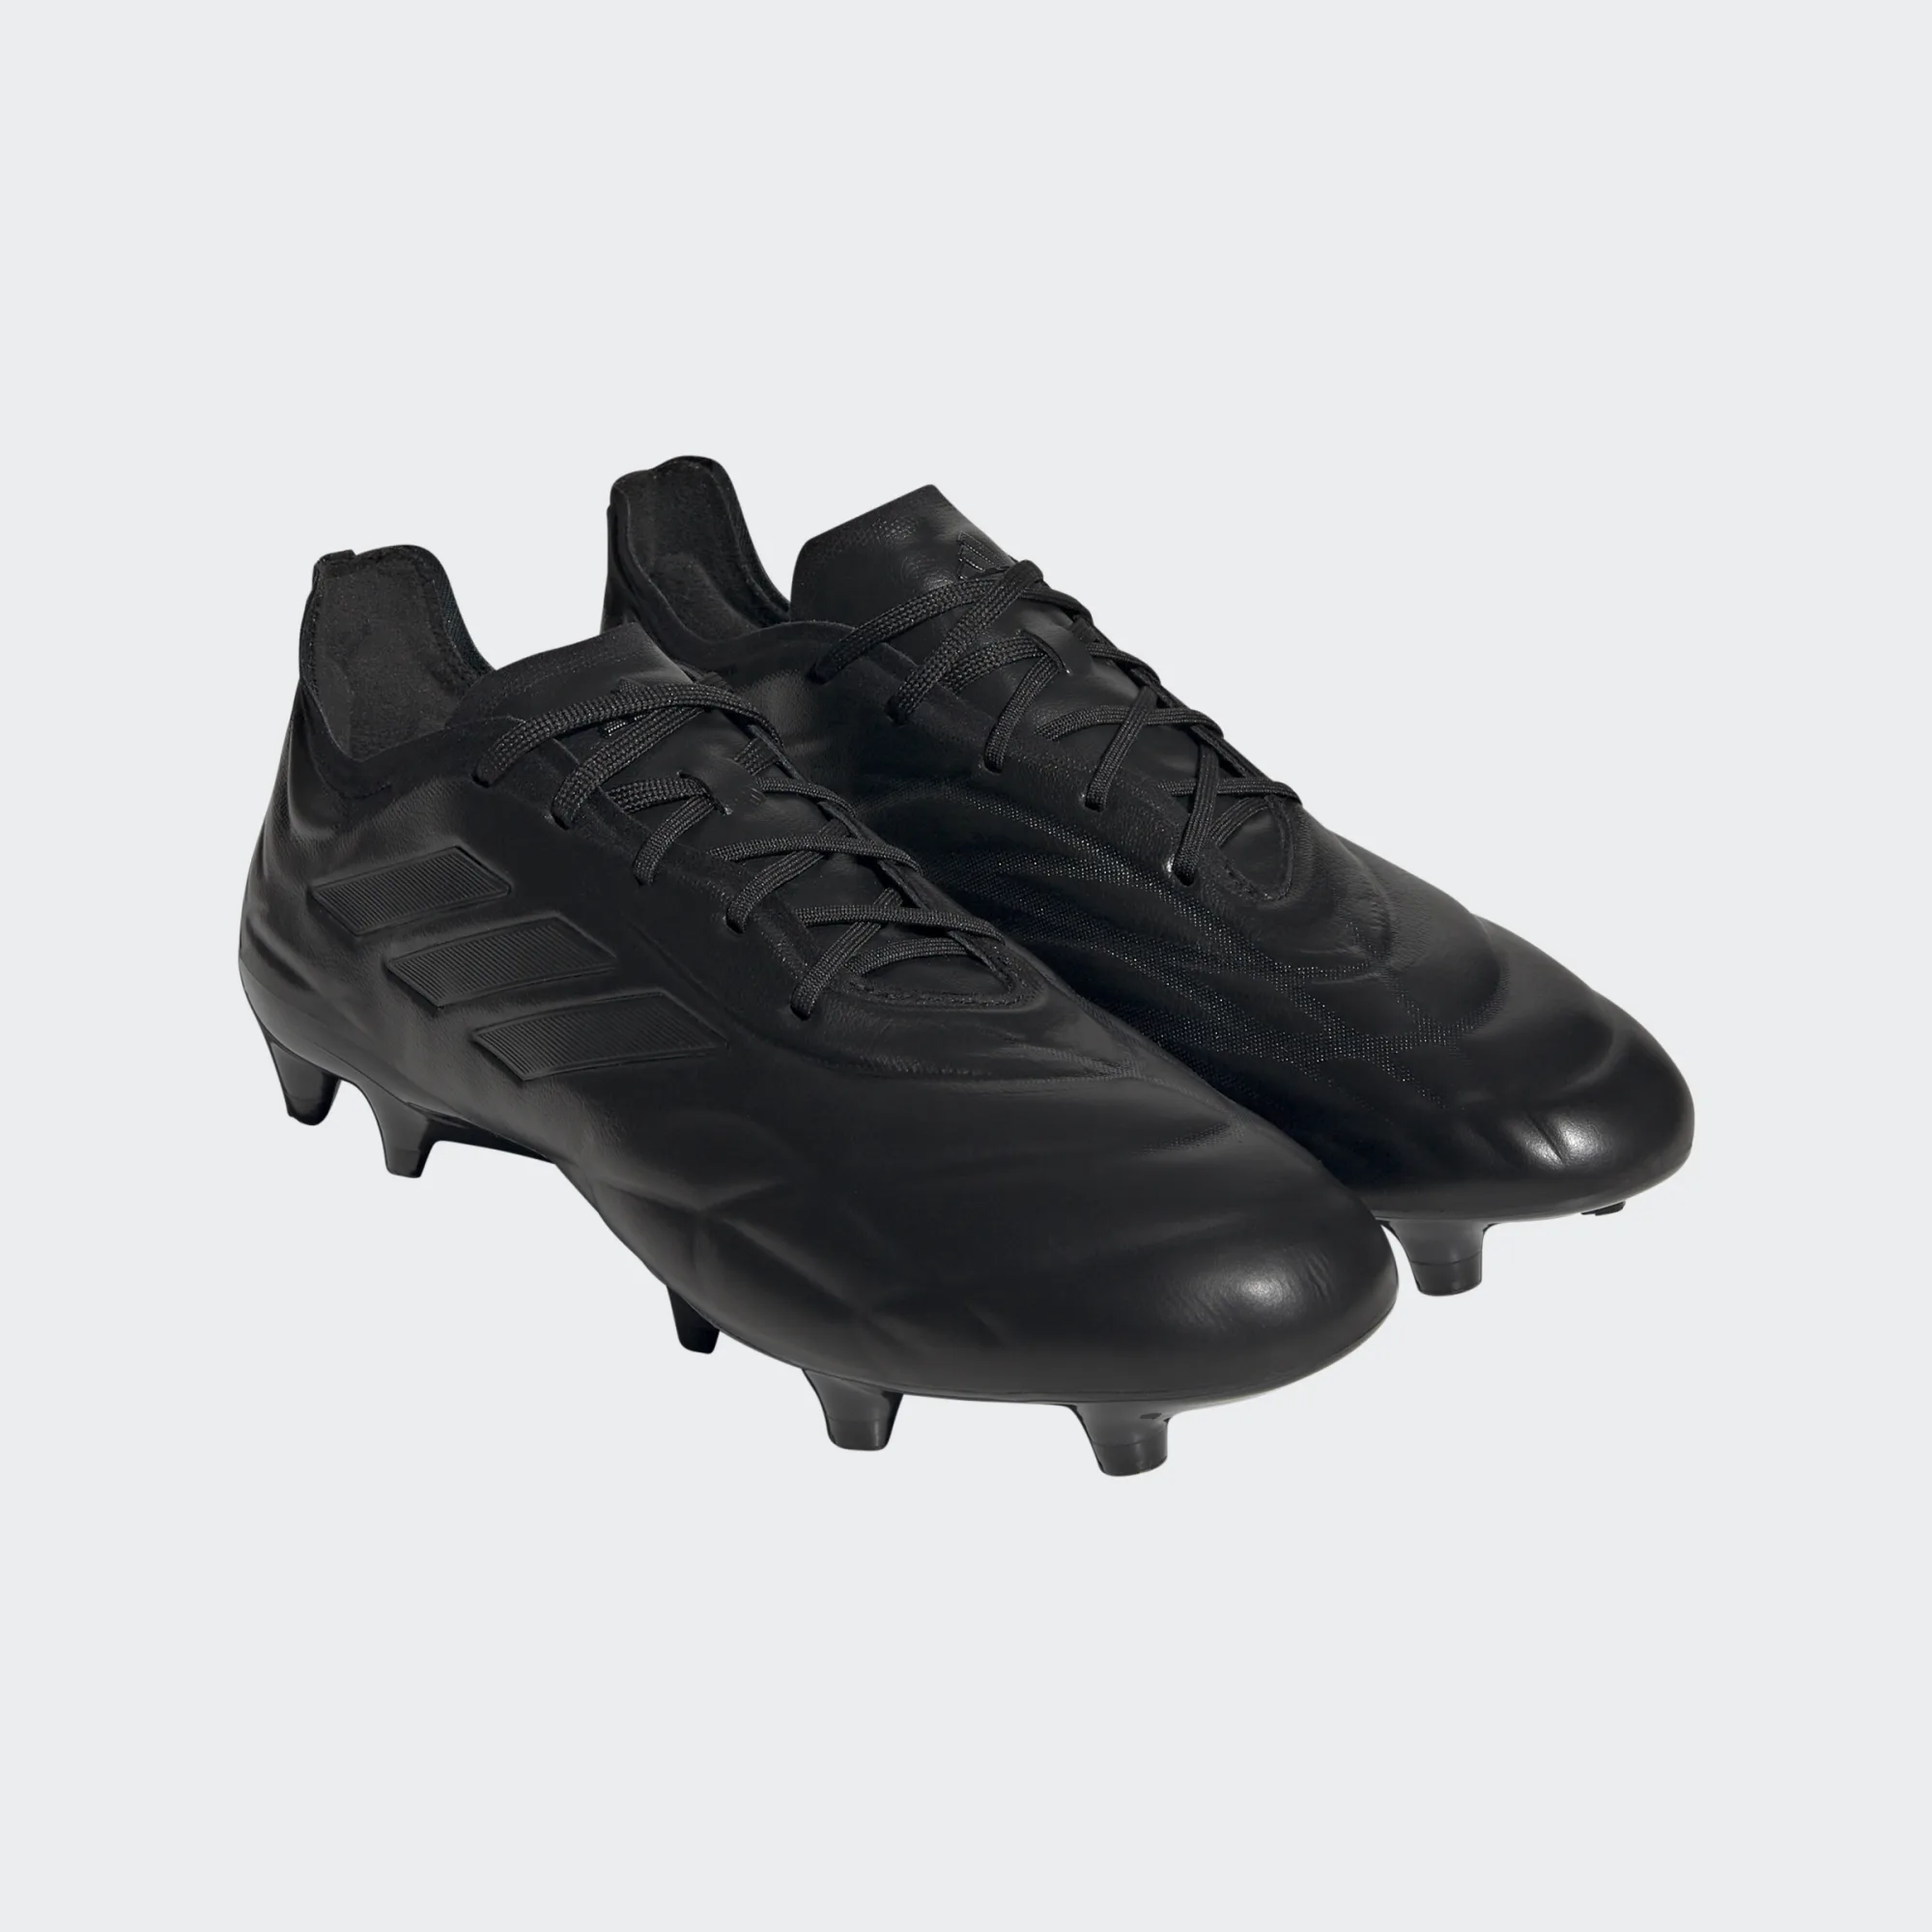 adidas HQ8905 Copa Pure.1 FG Fussballschuhe all black. Auf Wunsch mit durchgenähter Sohle.